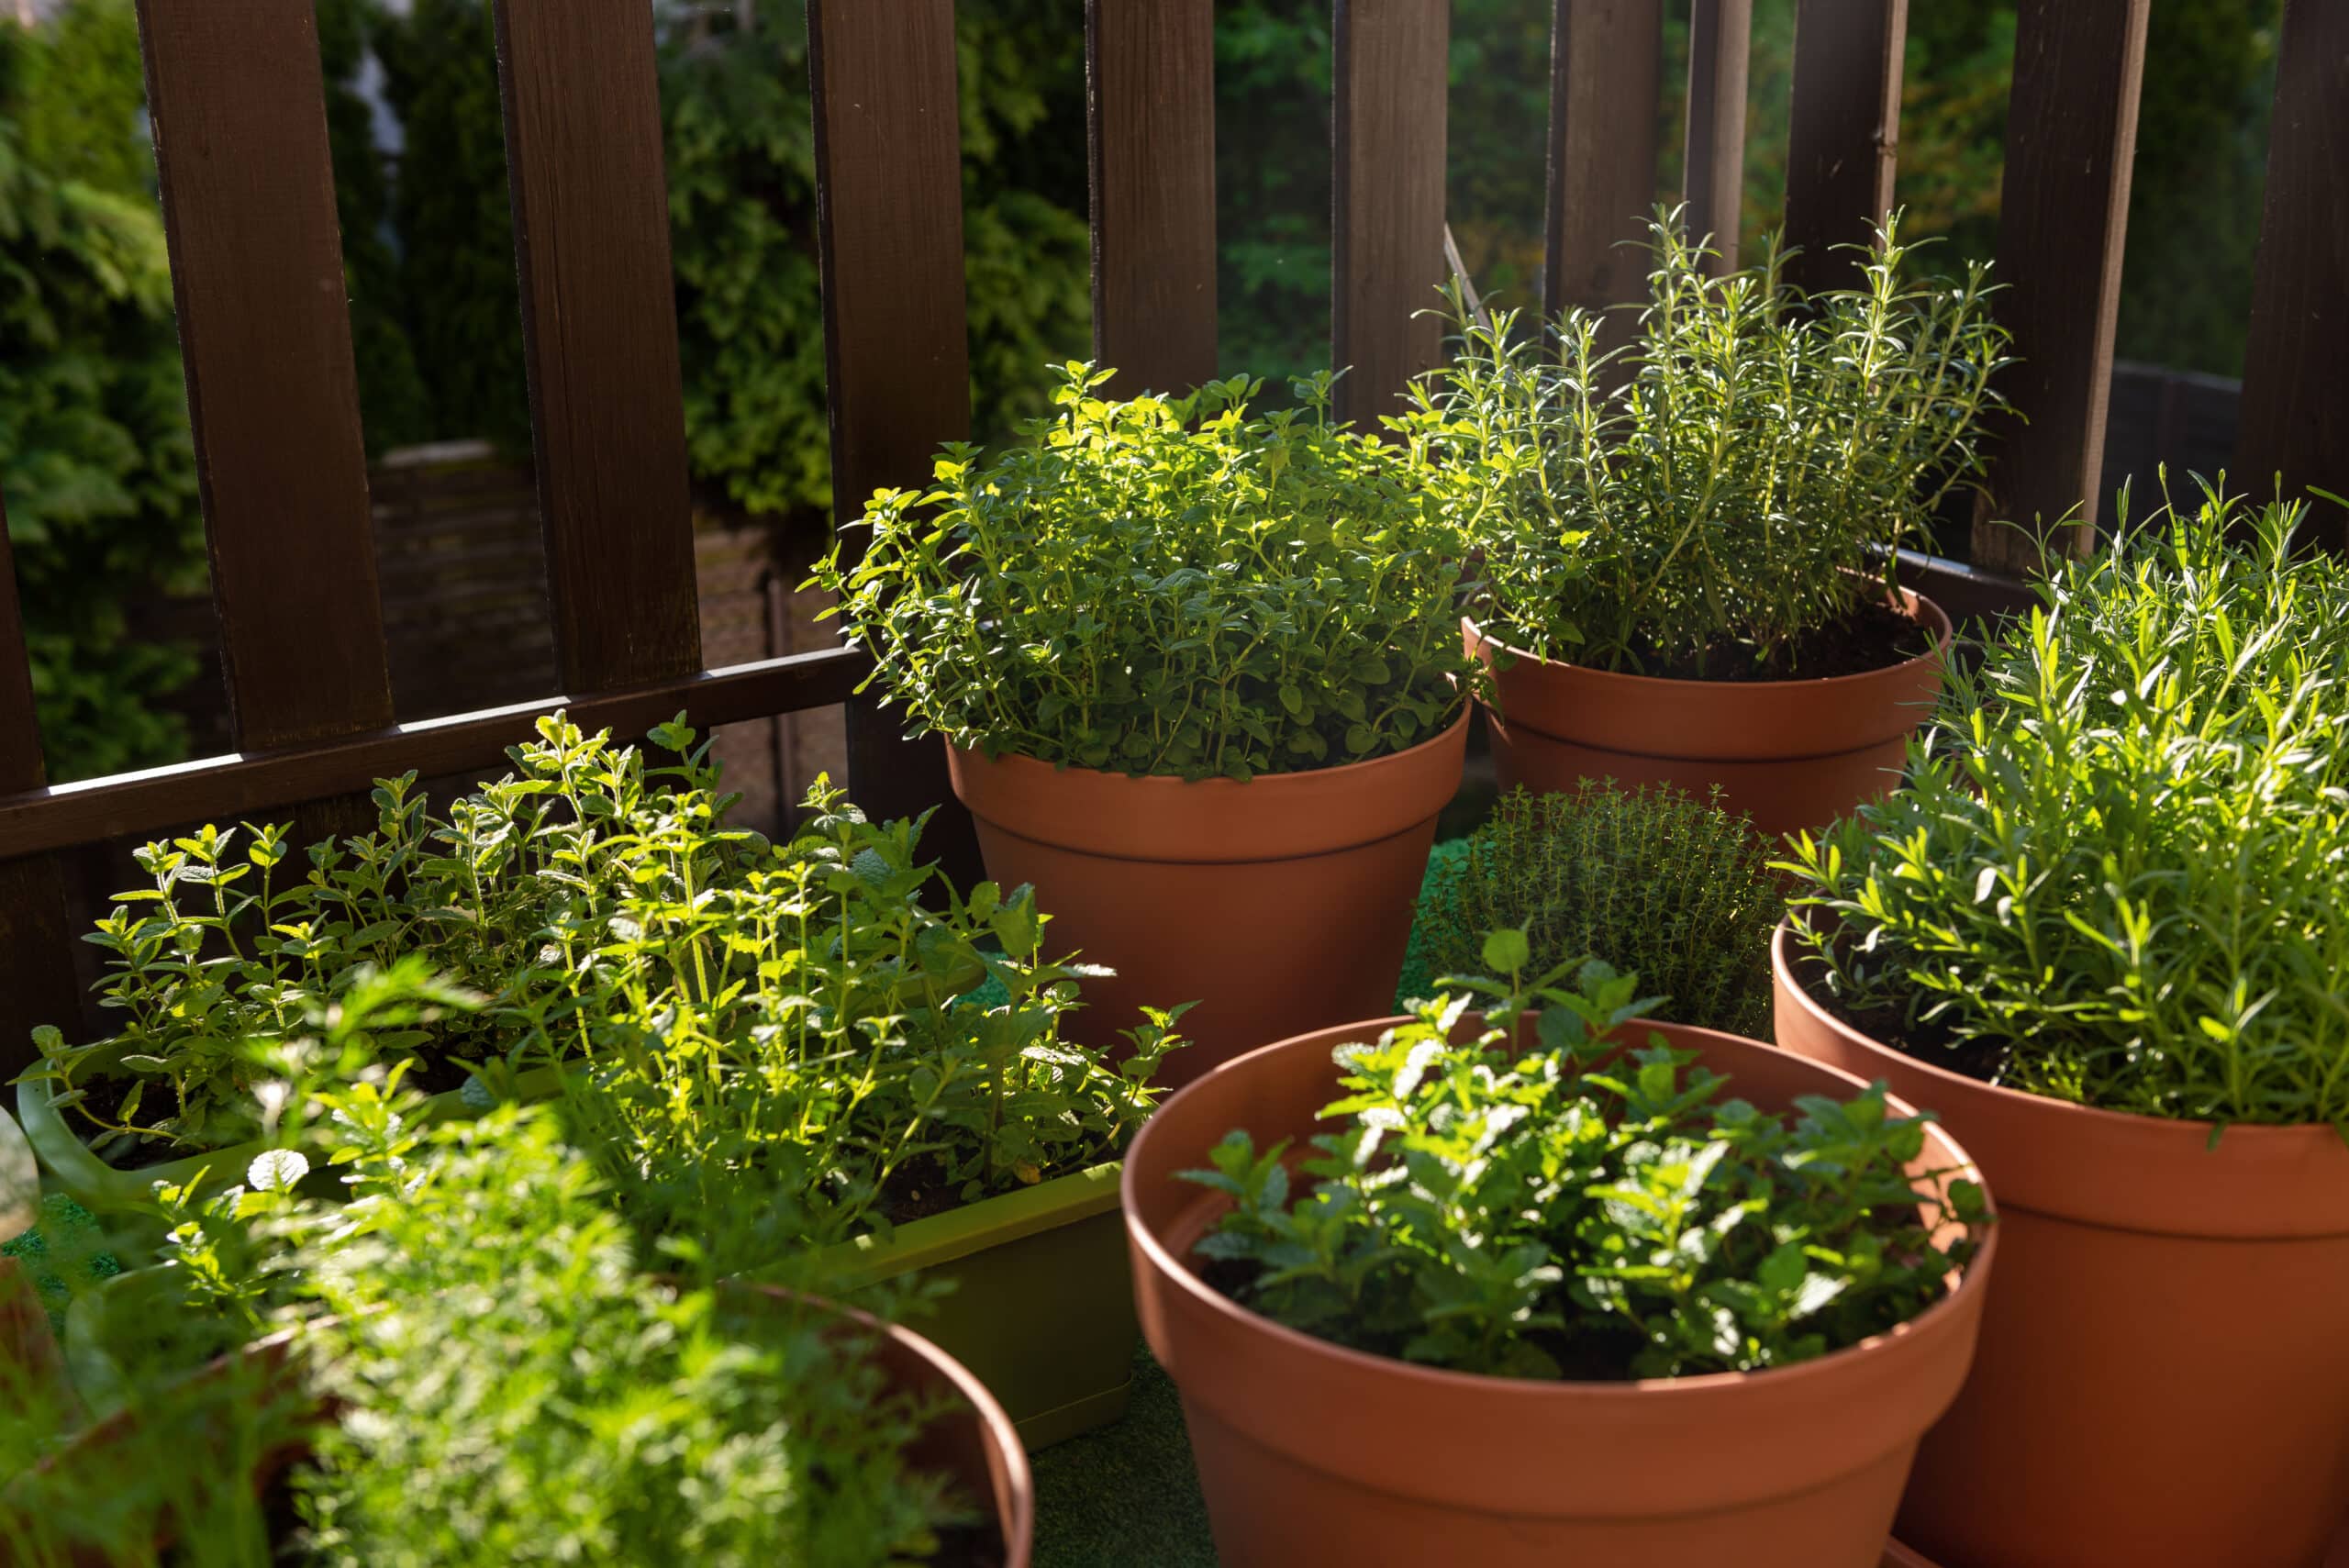 Gemüse und Kräuter selbst anbauen - selbst auf dem Balkon kein Problem